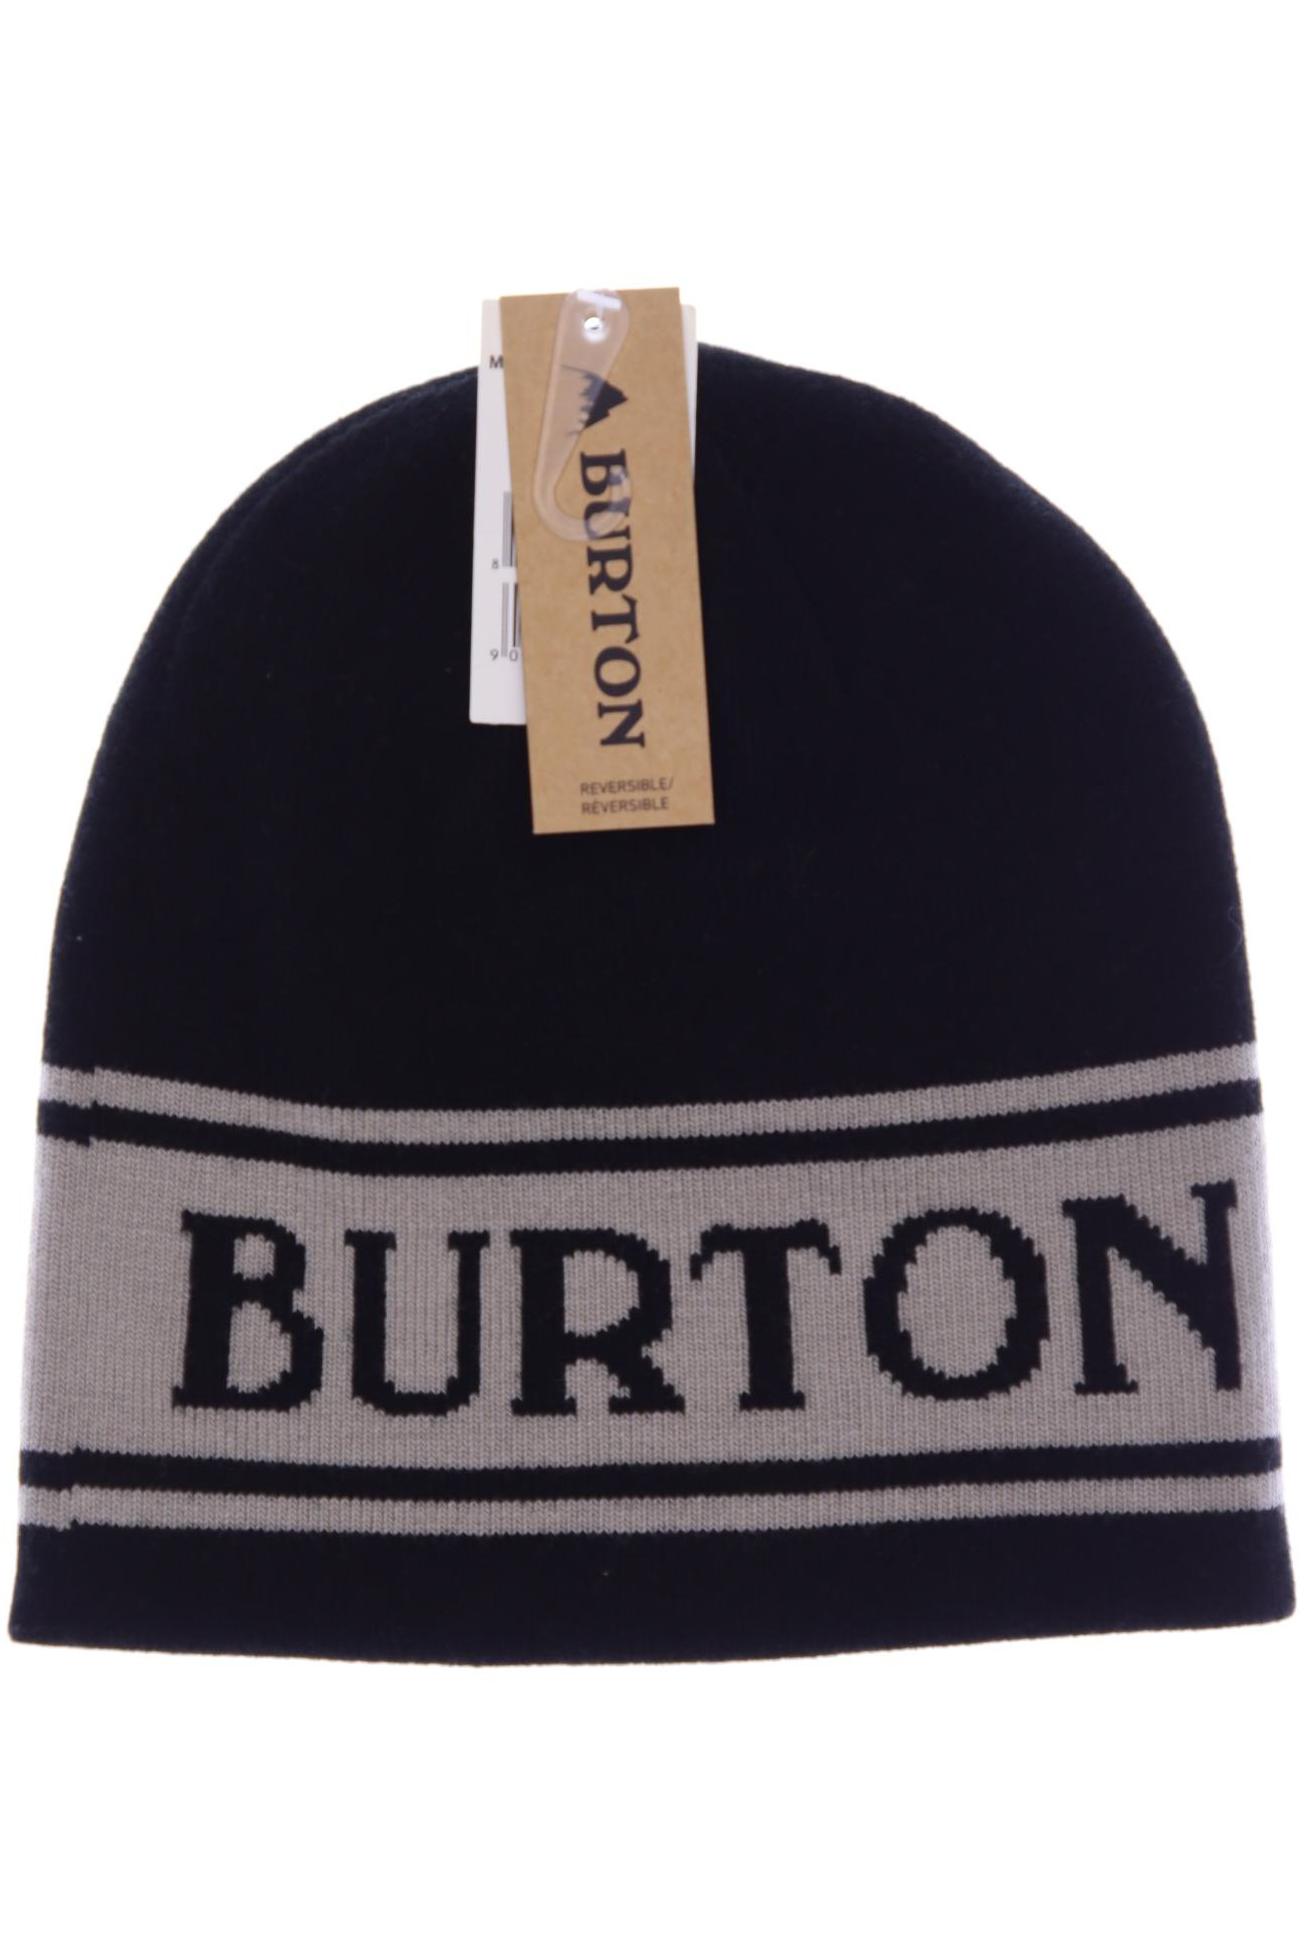 Burton Damen Hut/Mütze, schwarz, Gr. uni von Burton